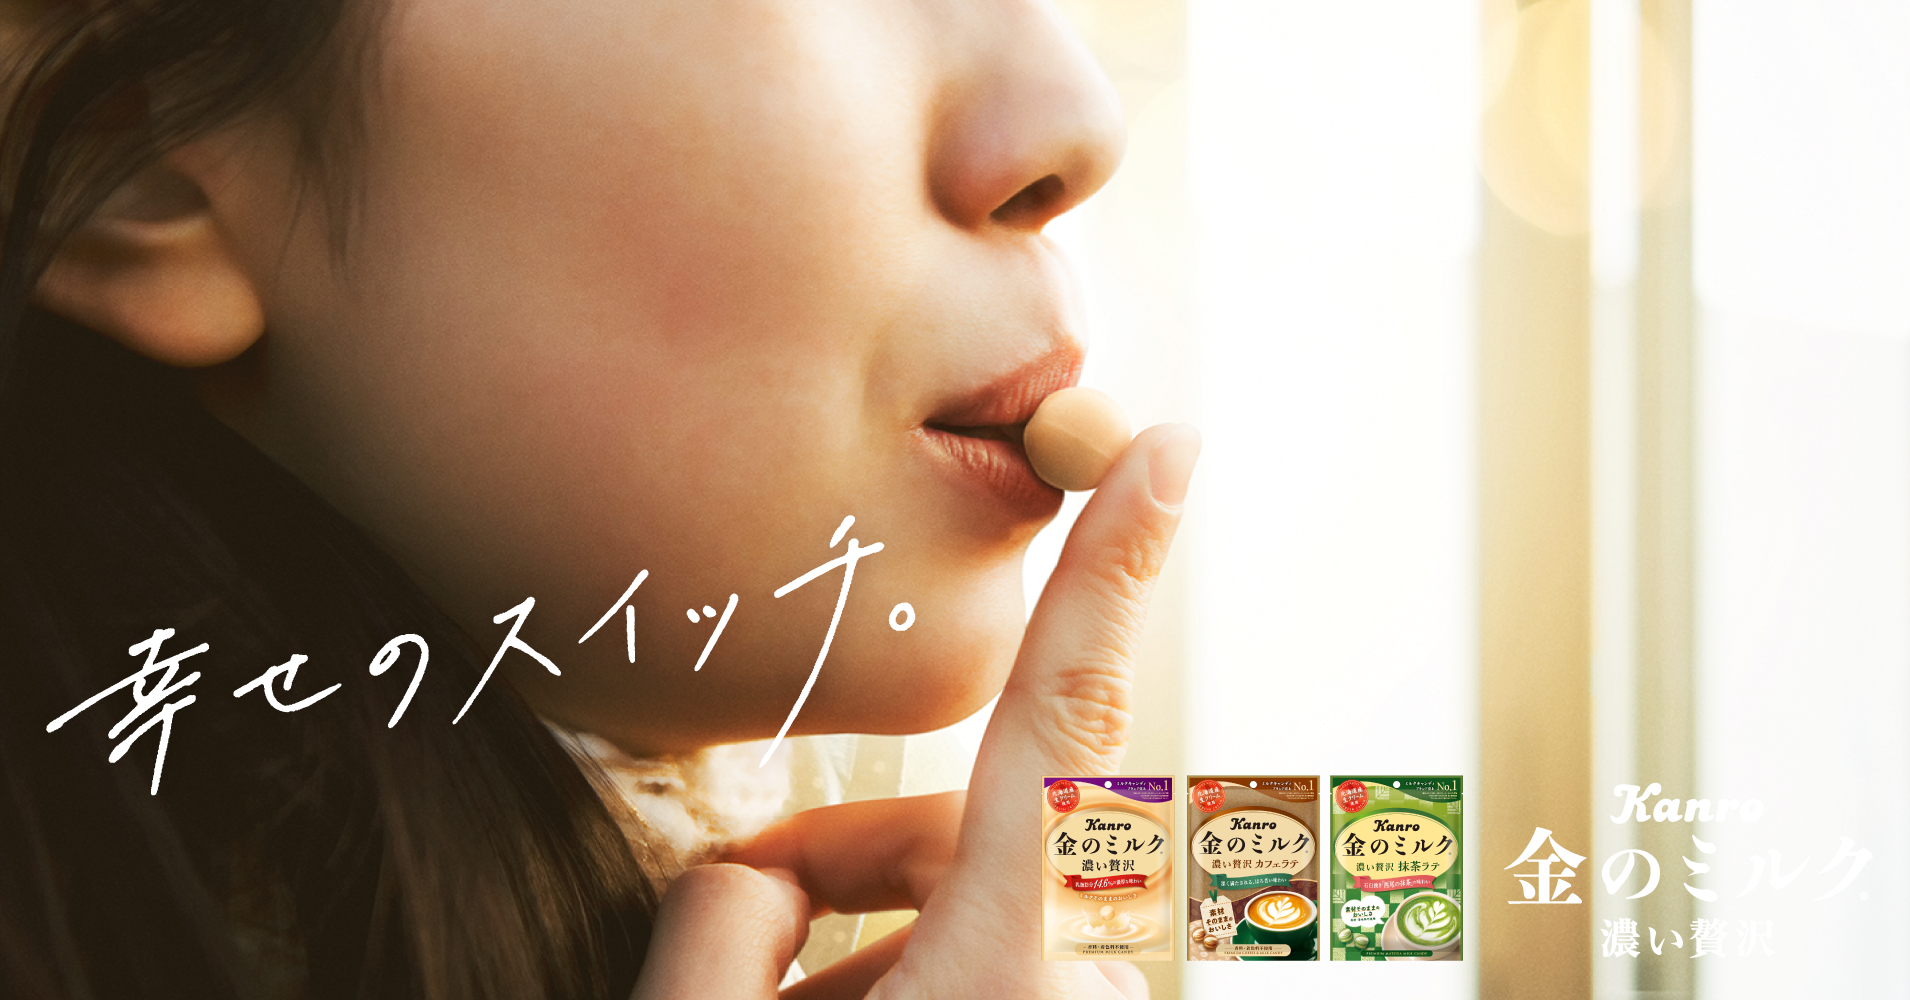 金のミルクキャンディ – Kanro POCKeT